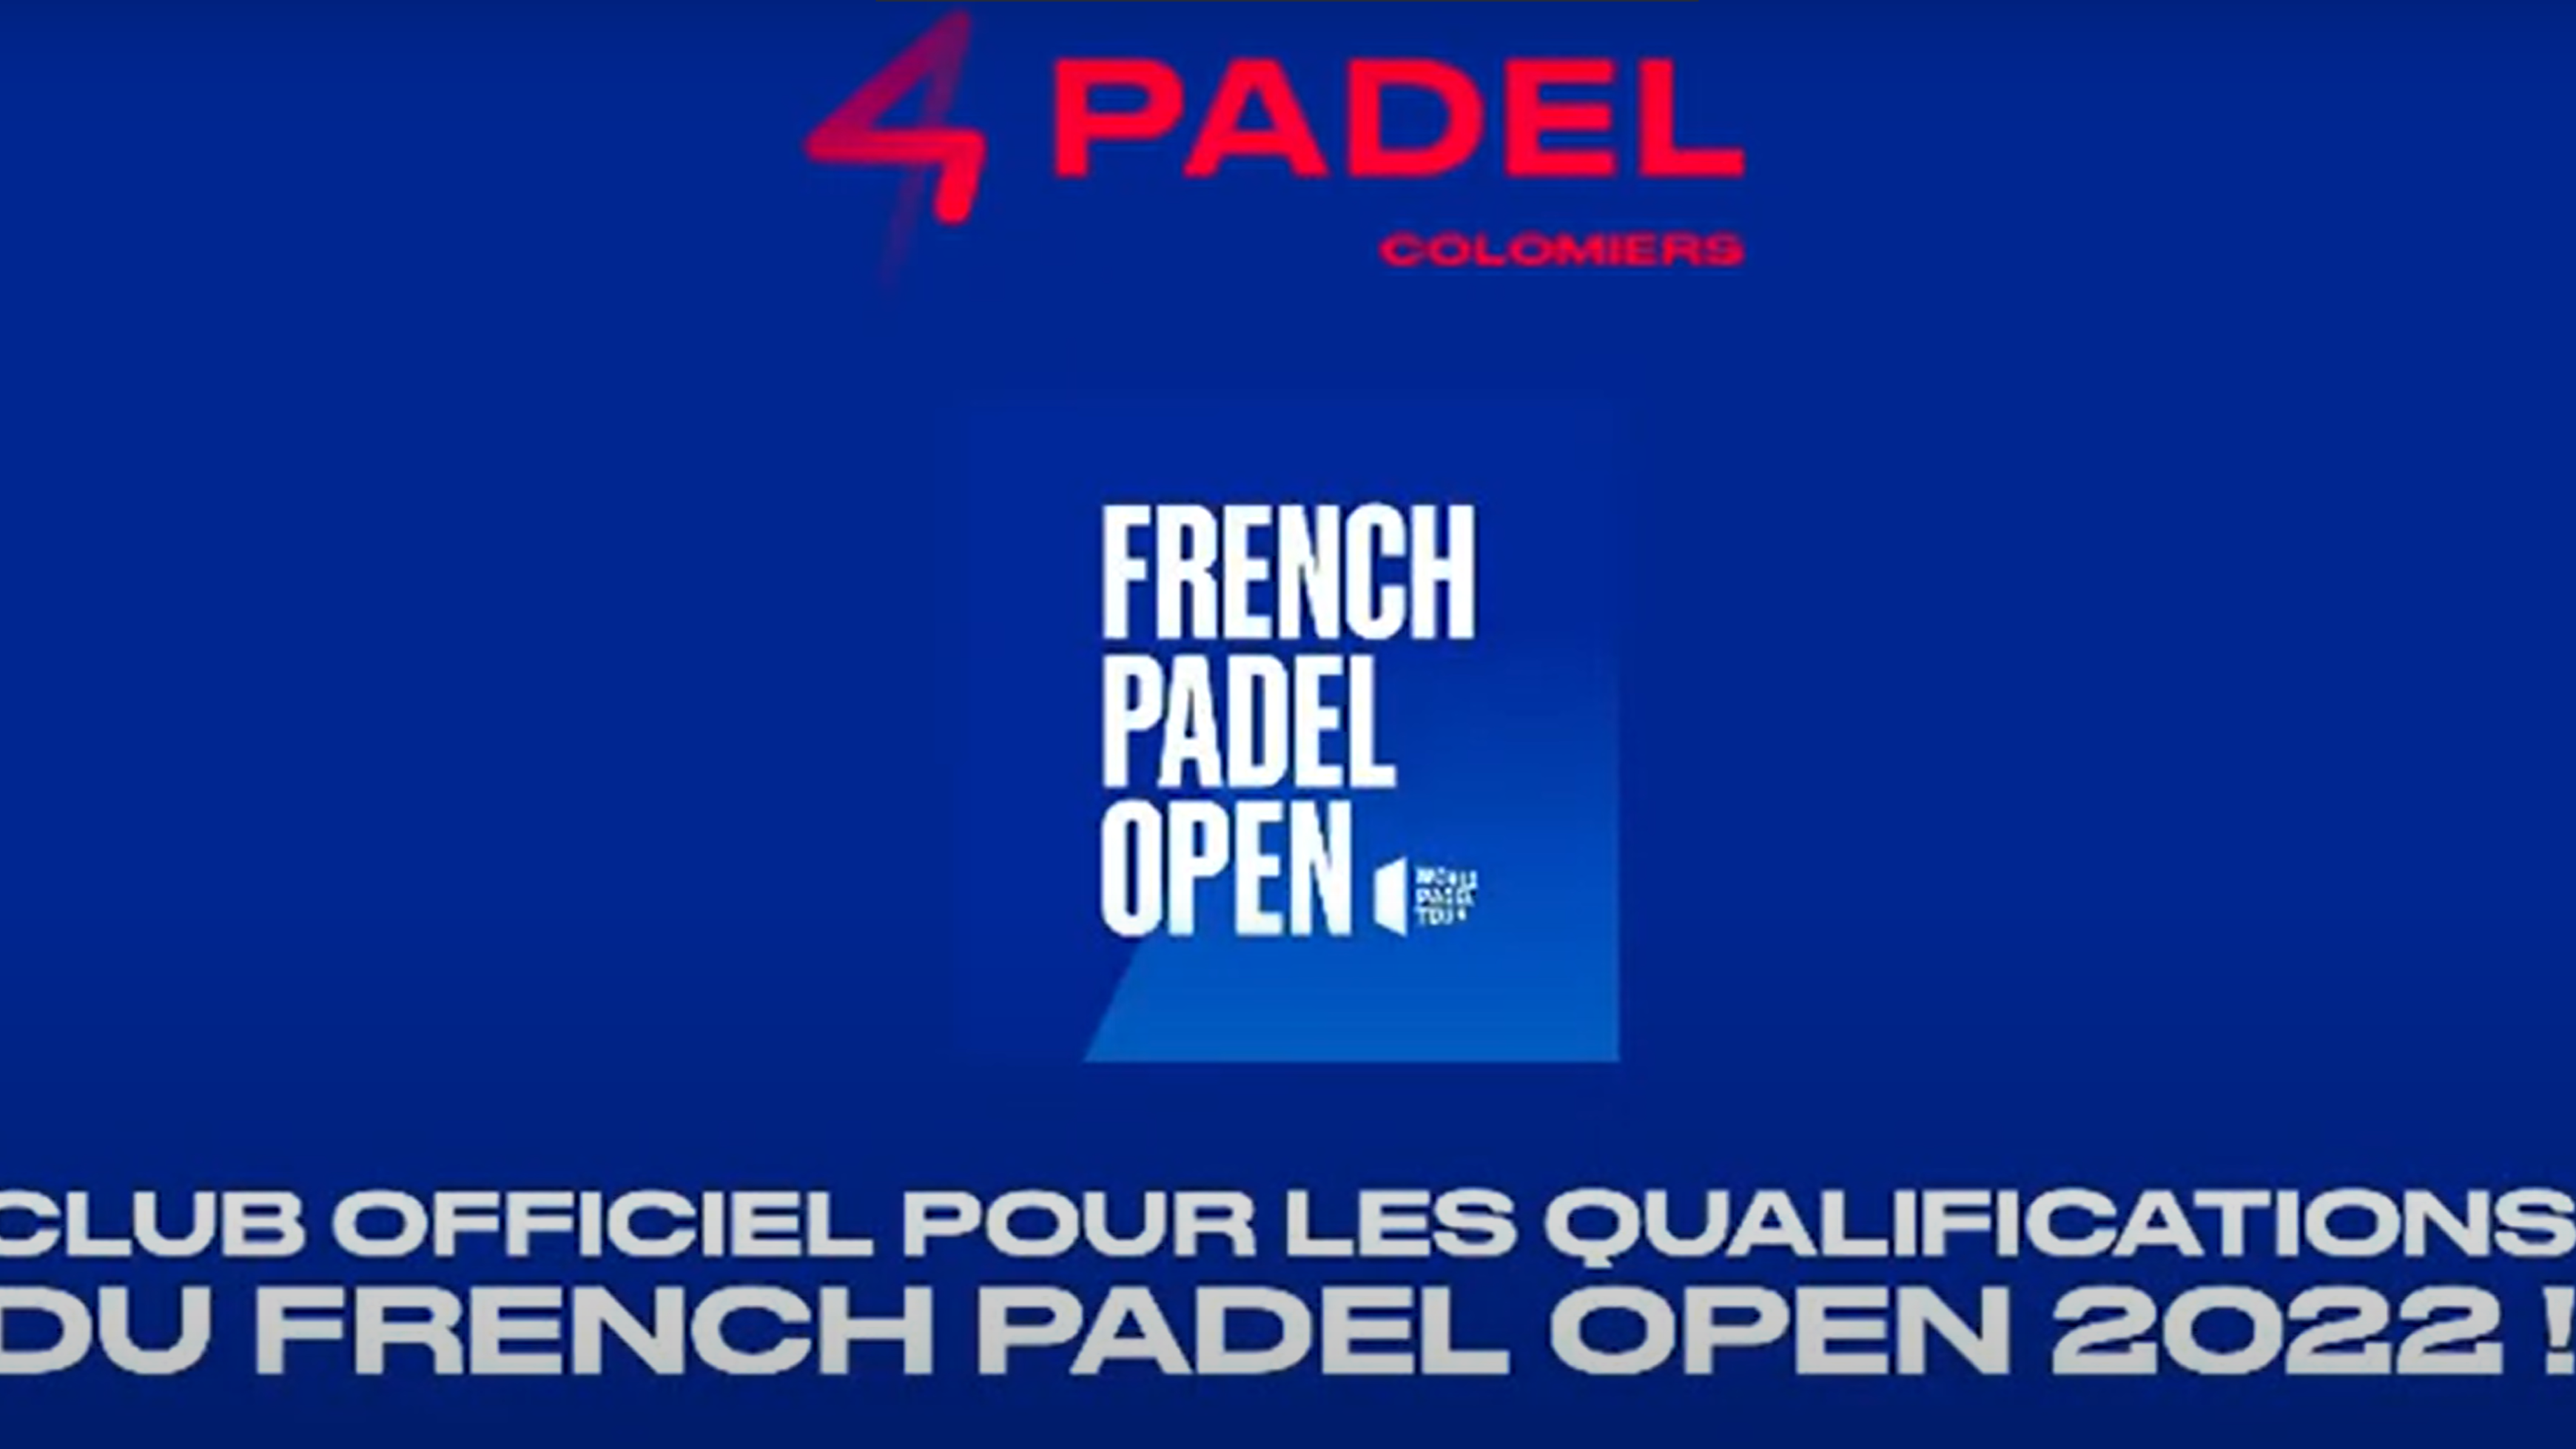 Francés Padel Abierto: 4Padel Toulouse, el club anfitrión